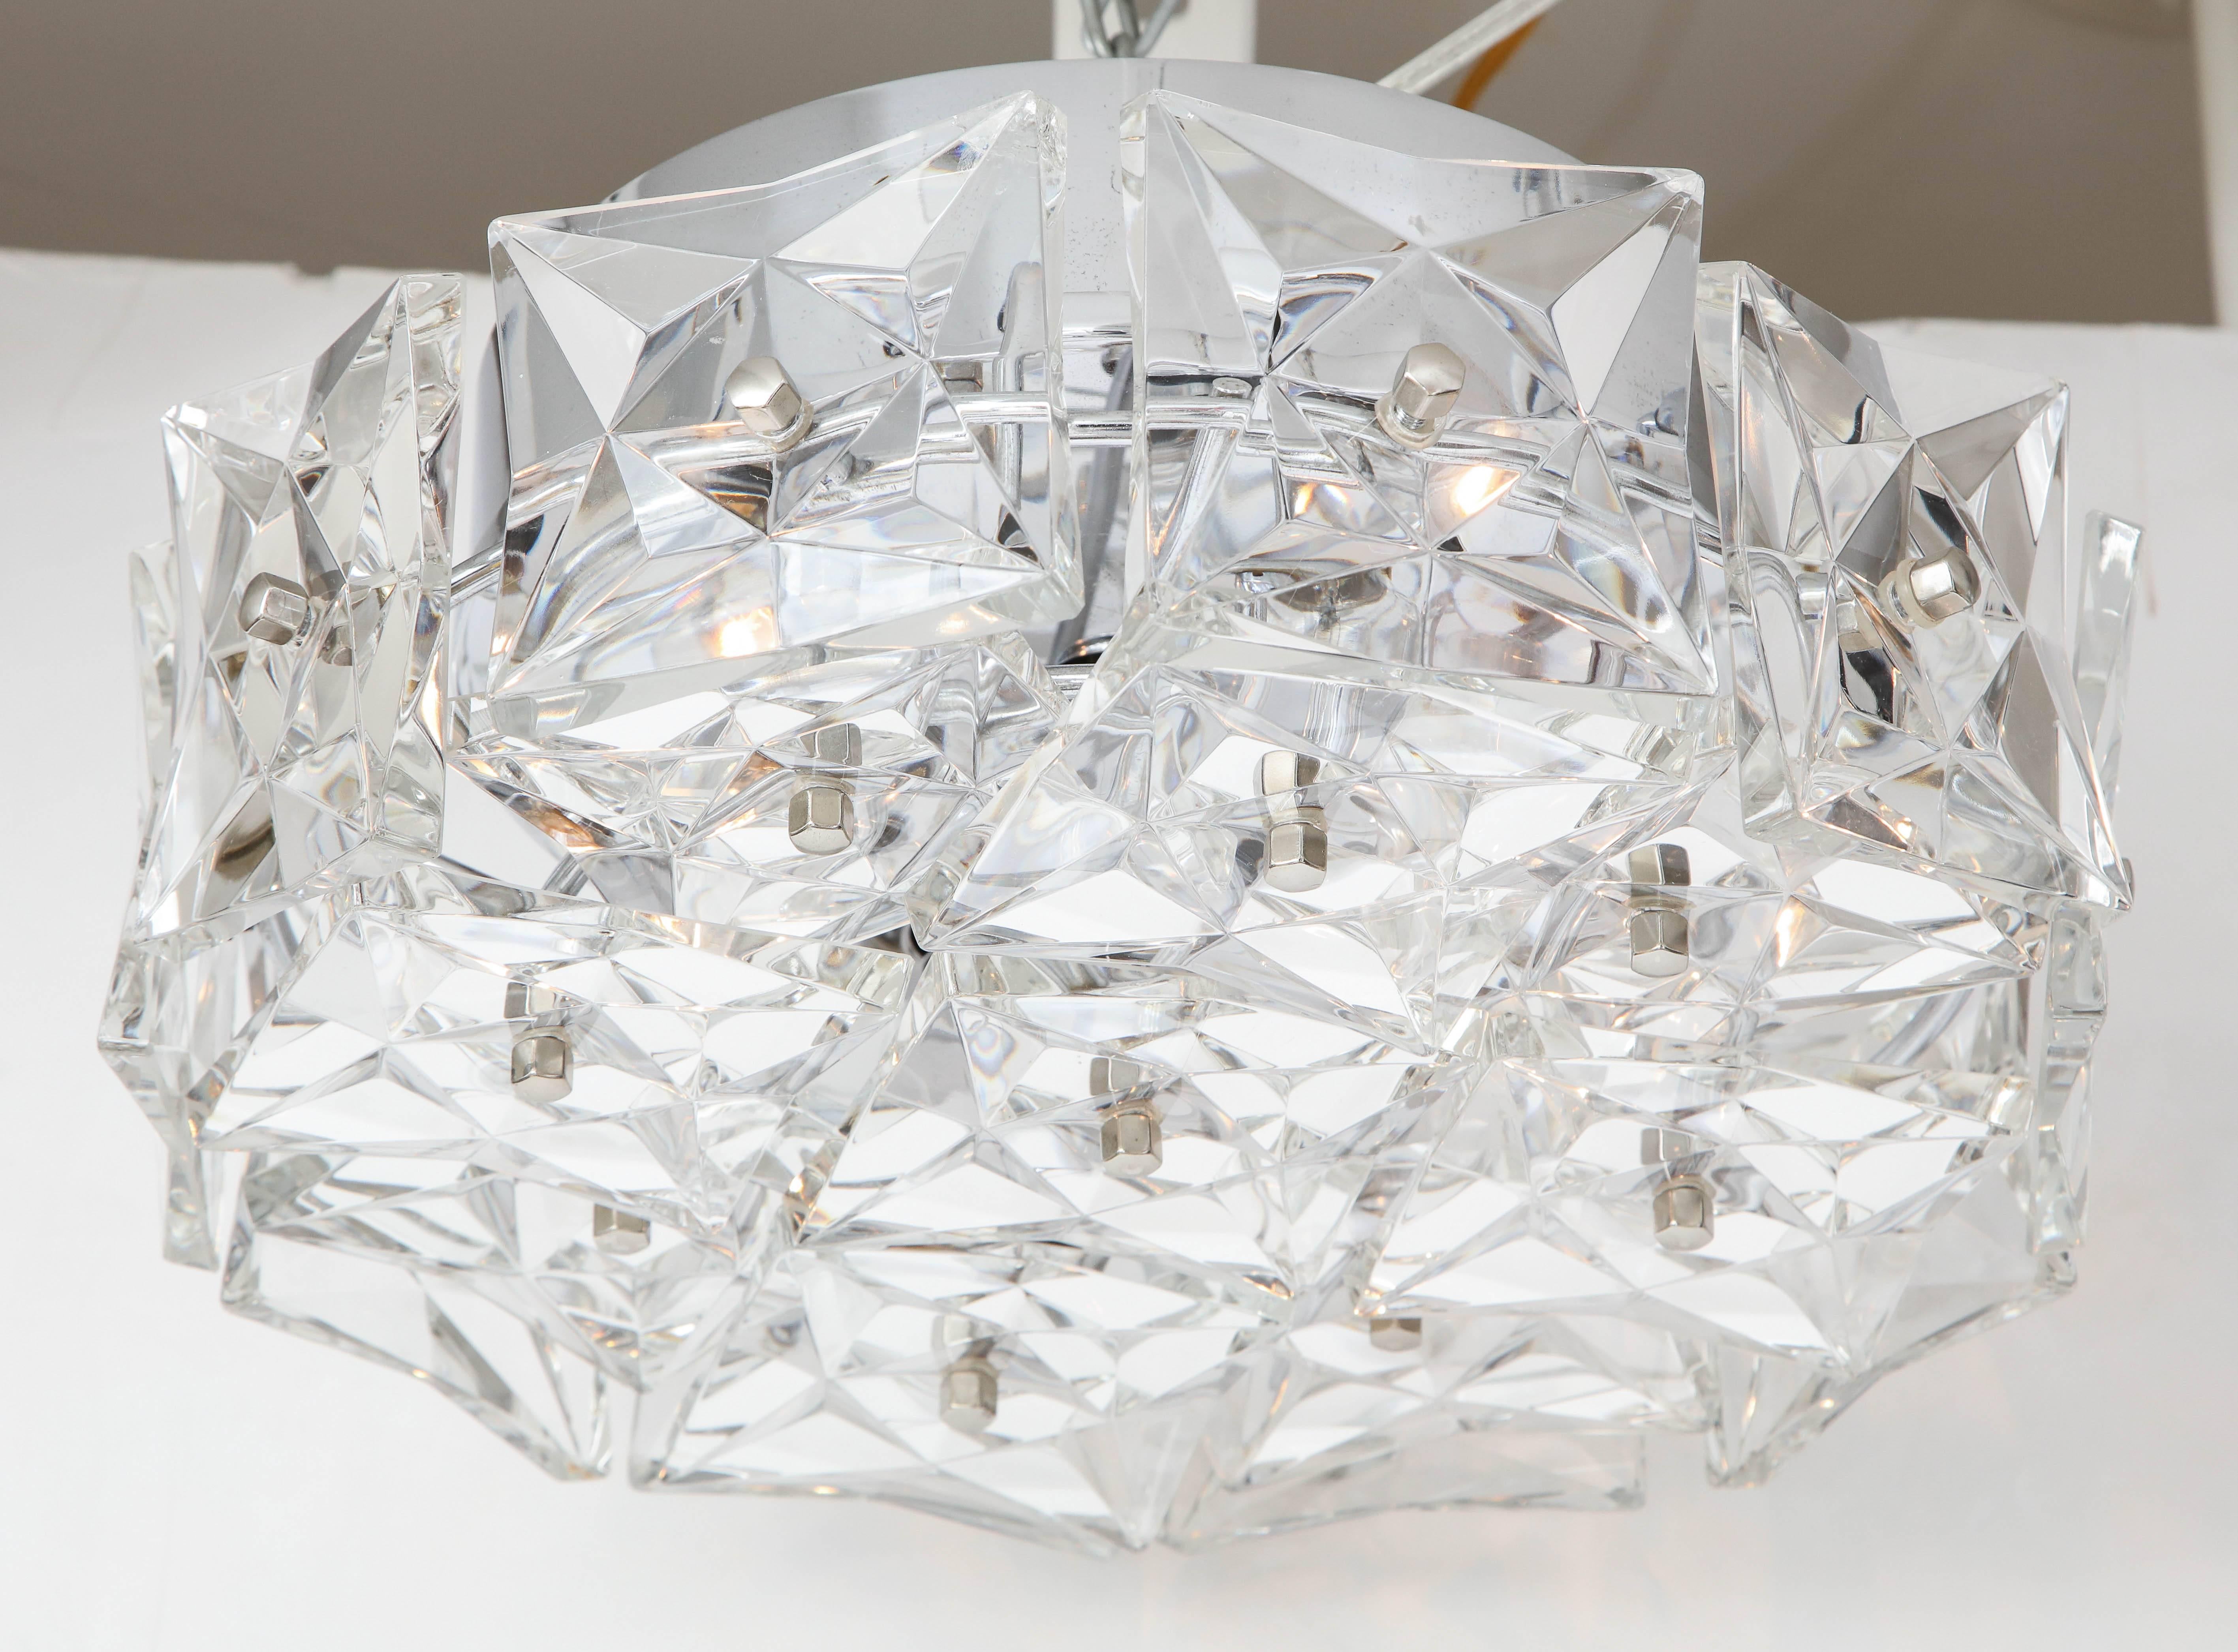 Luminaire encastré ultra glamour présentant des prismes en cristal autrichiens carrés et taillés en profondeur sur un cadre en nickel poli. Le luminaire abrite cinq sources lumineuses. Recâblé pour une utilisation aux États-Unis.

  